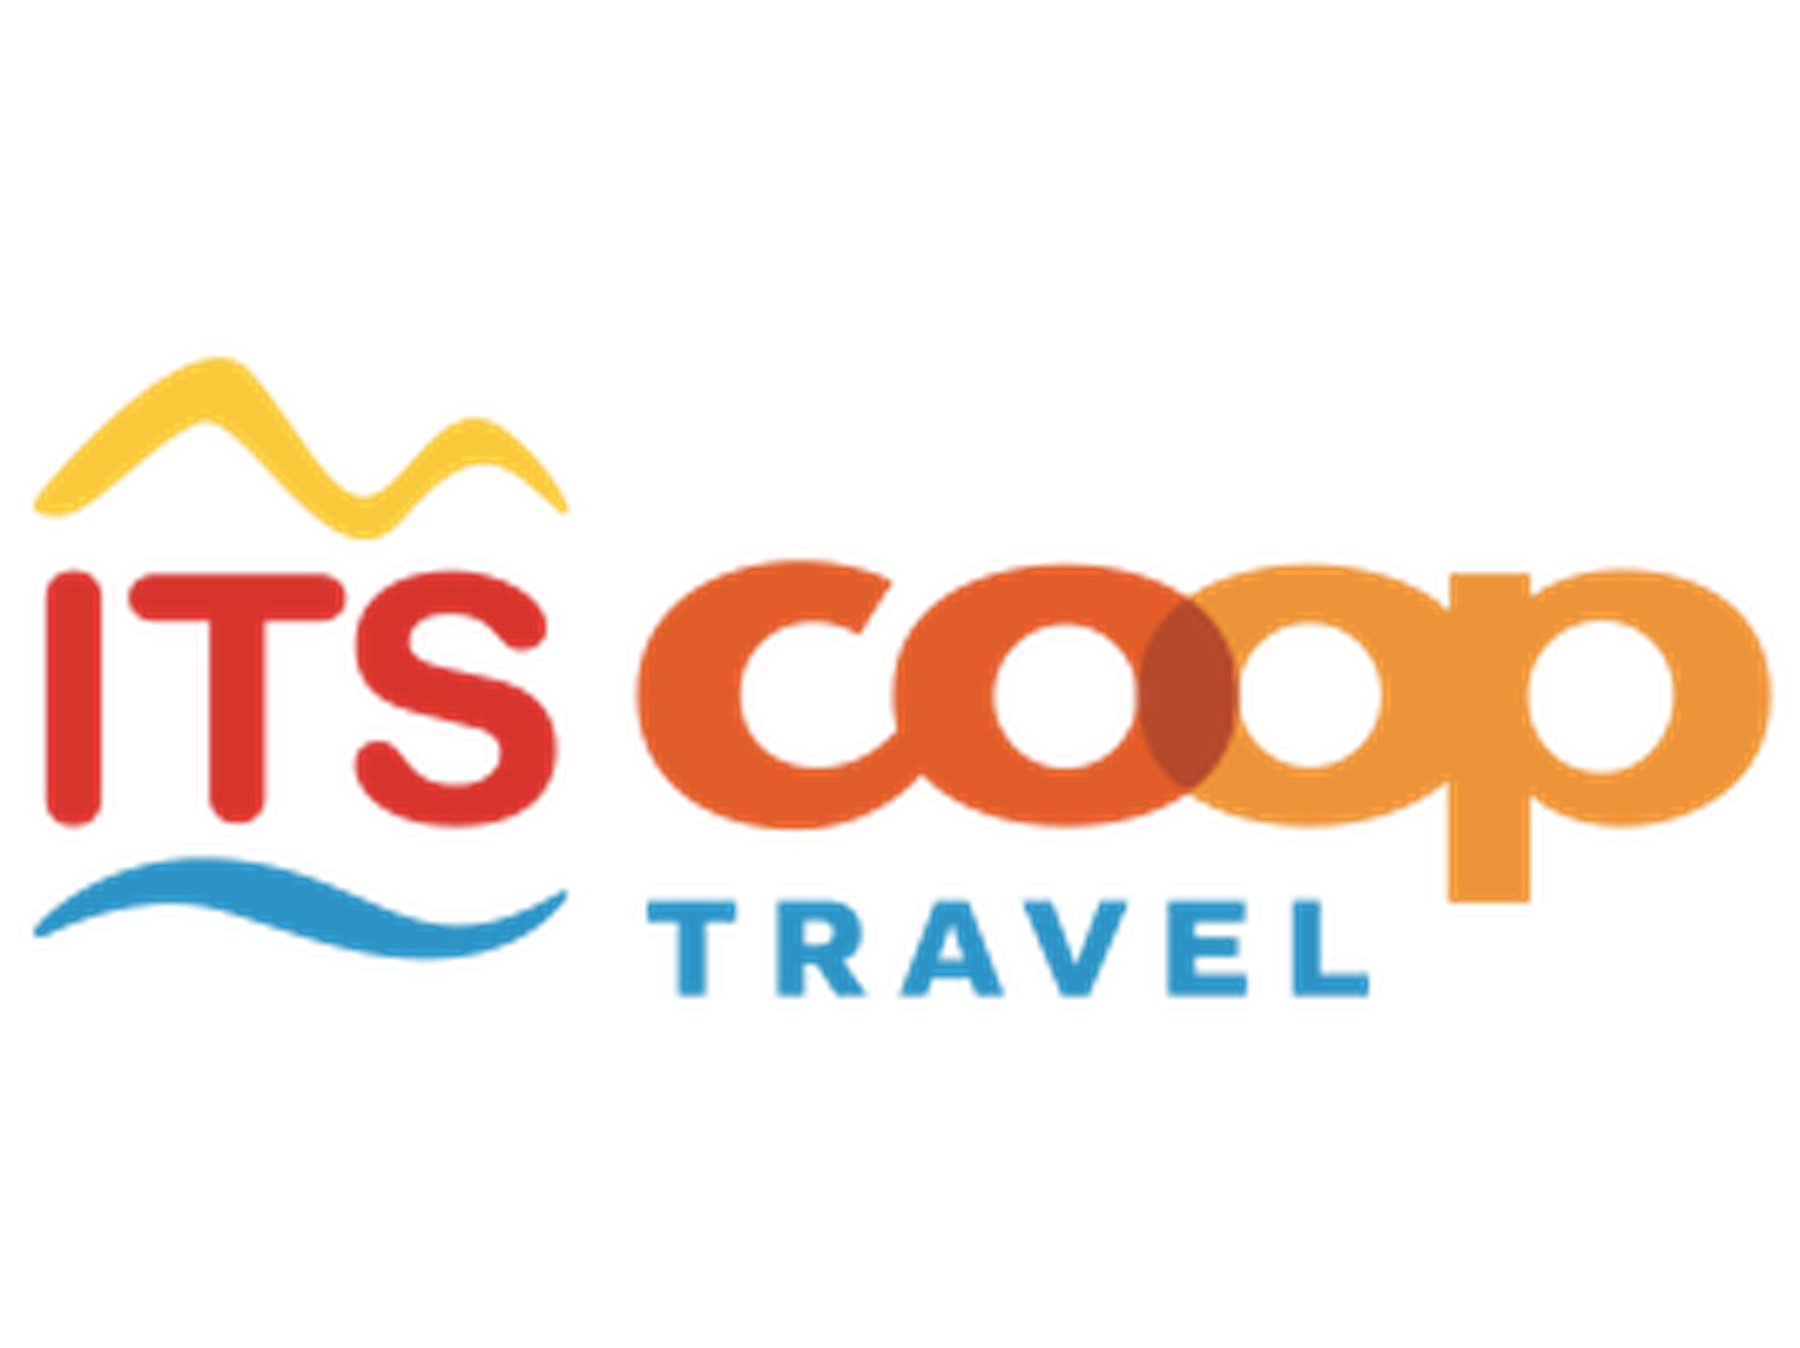 ITS Coop Travel Rabattcode